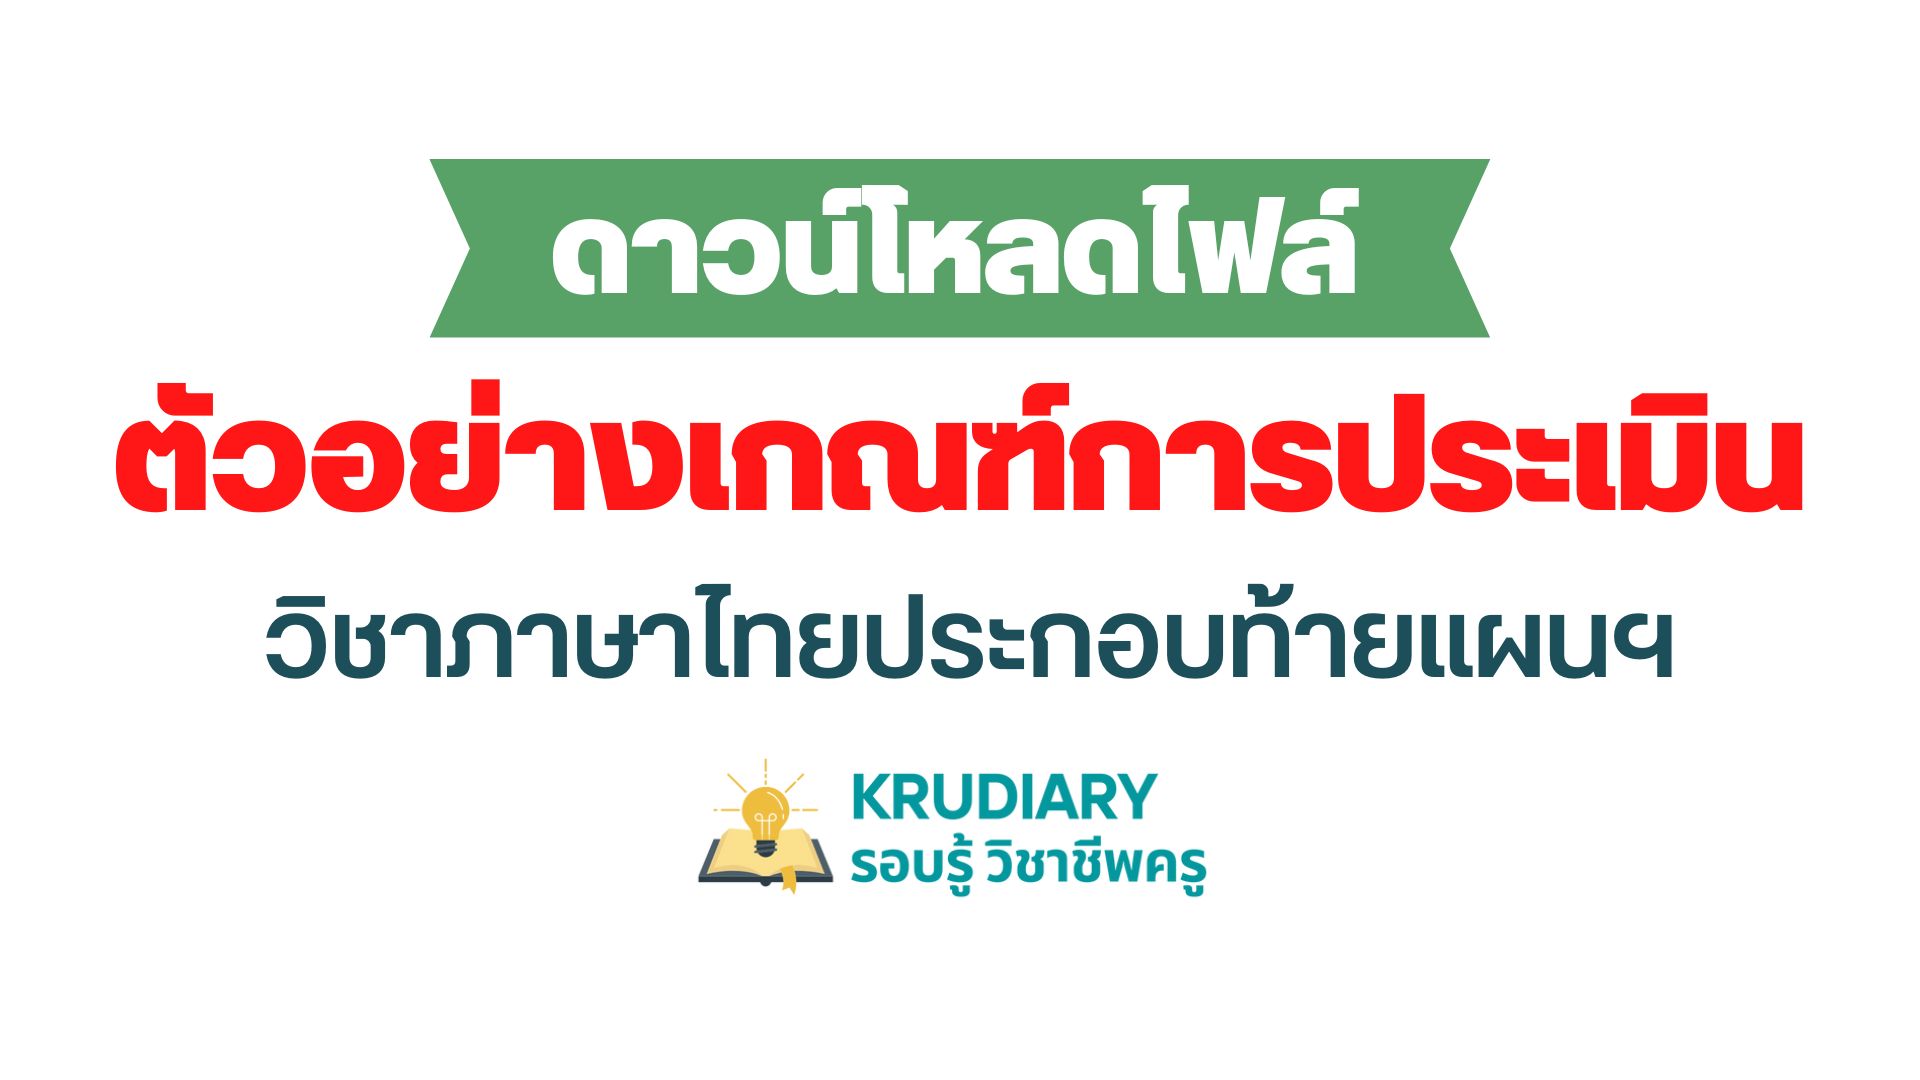 แจกไฟล์ฟรี ตัวอย่างเกณฑ์การประเมินวิชาภาษาไทย ใช้ประกอบท้ายเเผนการสอนของครู 4 สาระในวิชาภาษาไทย